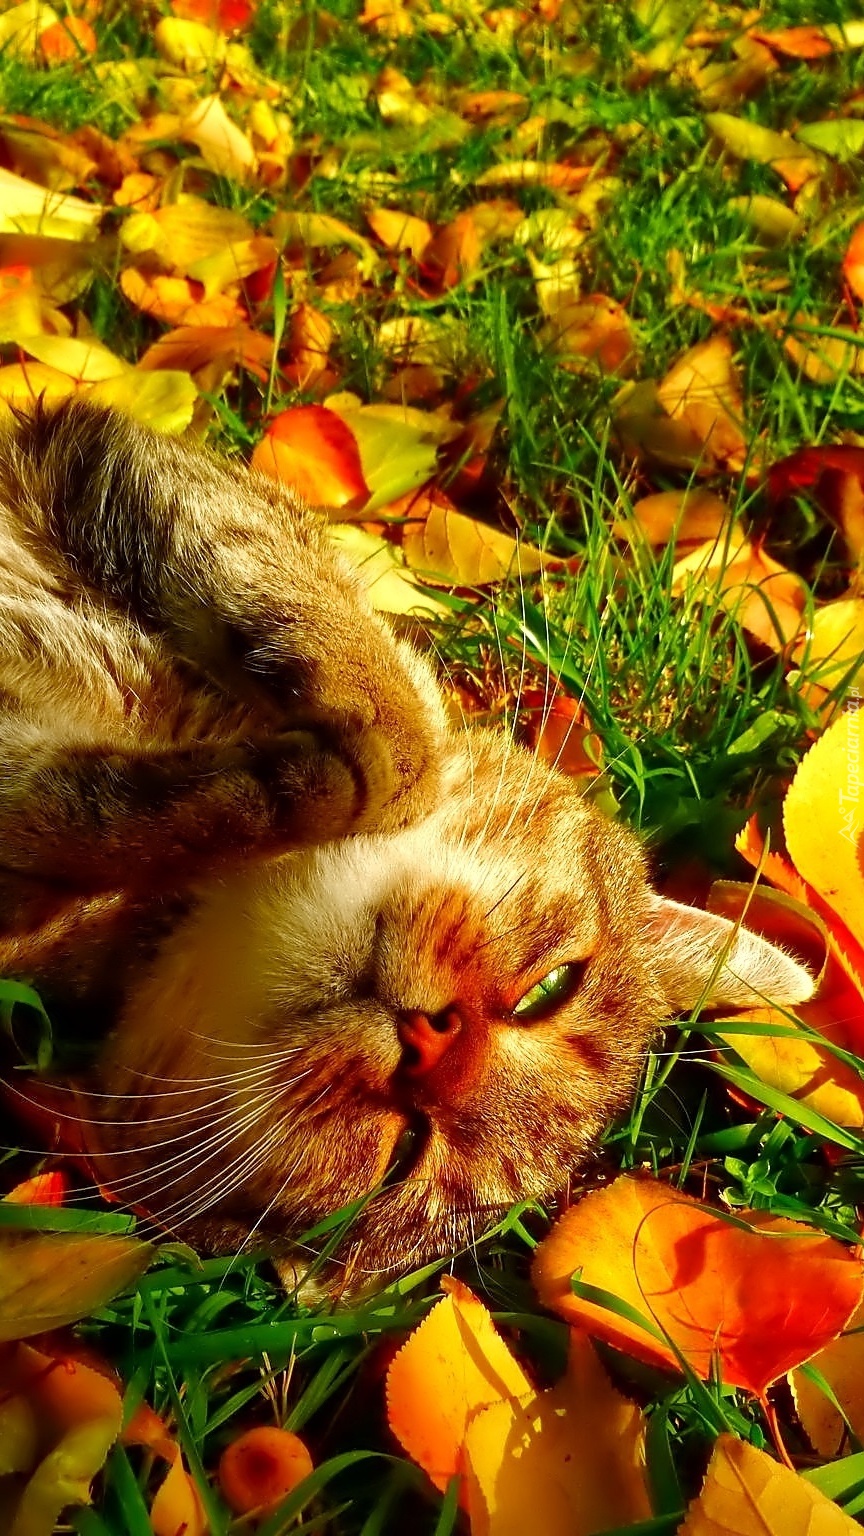 Kotek w jesiennych liściach